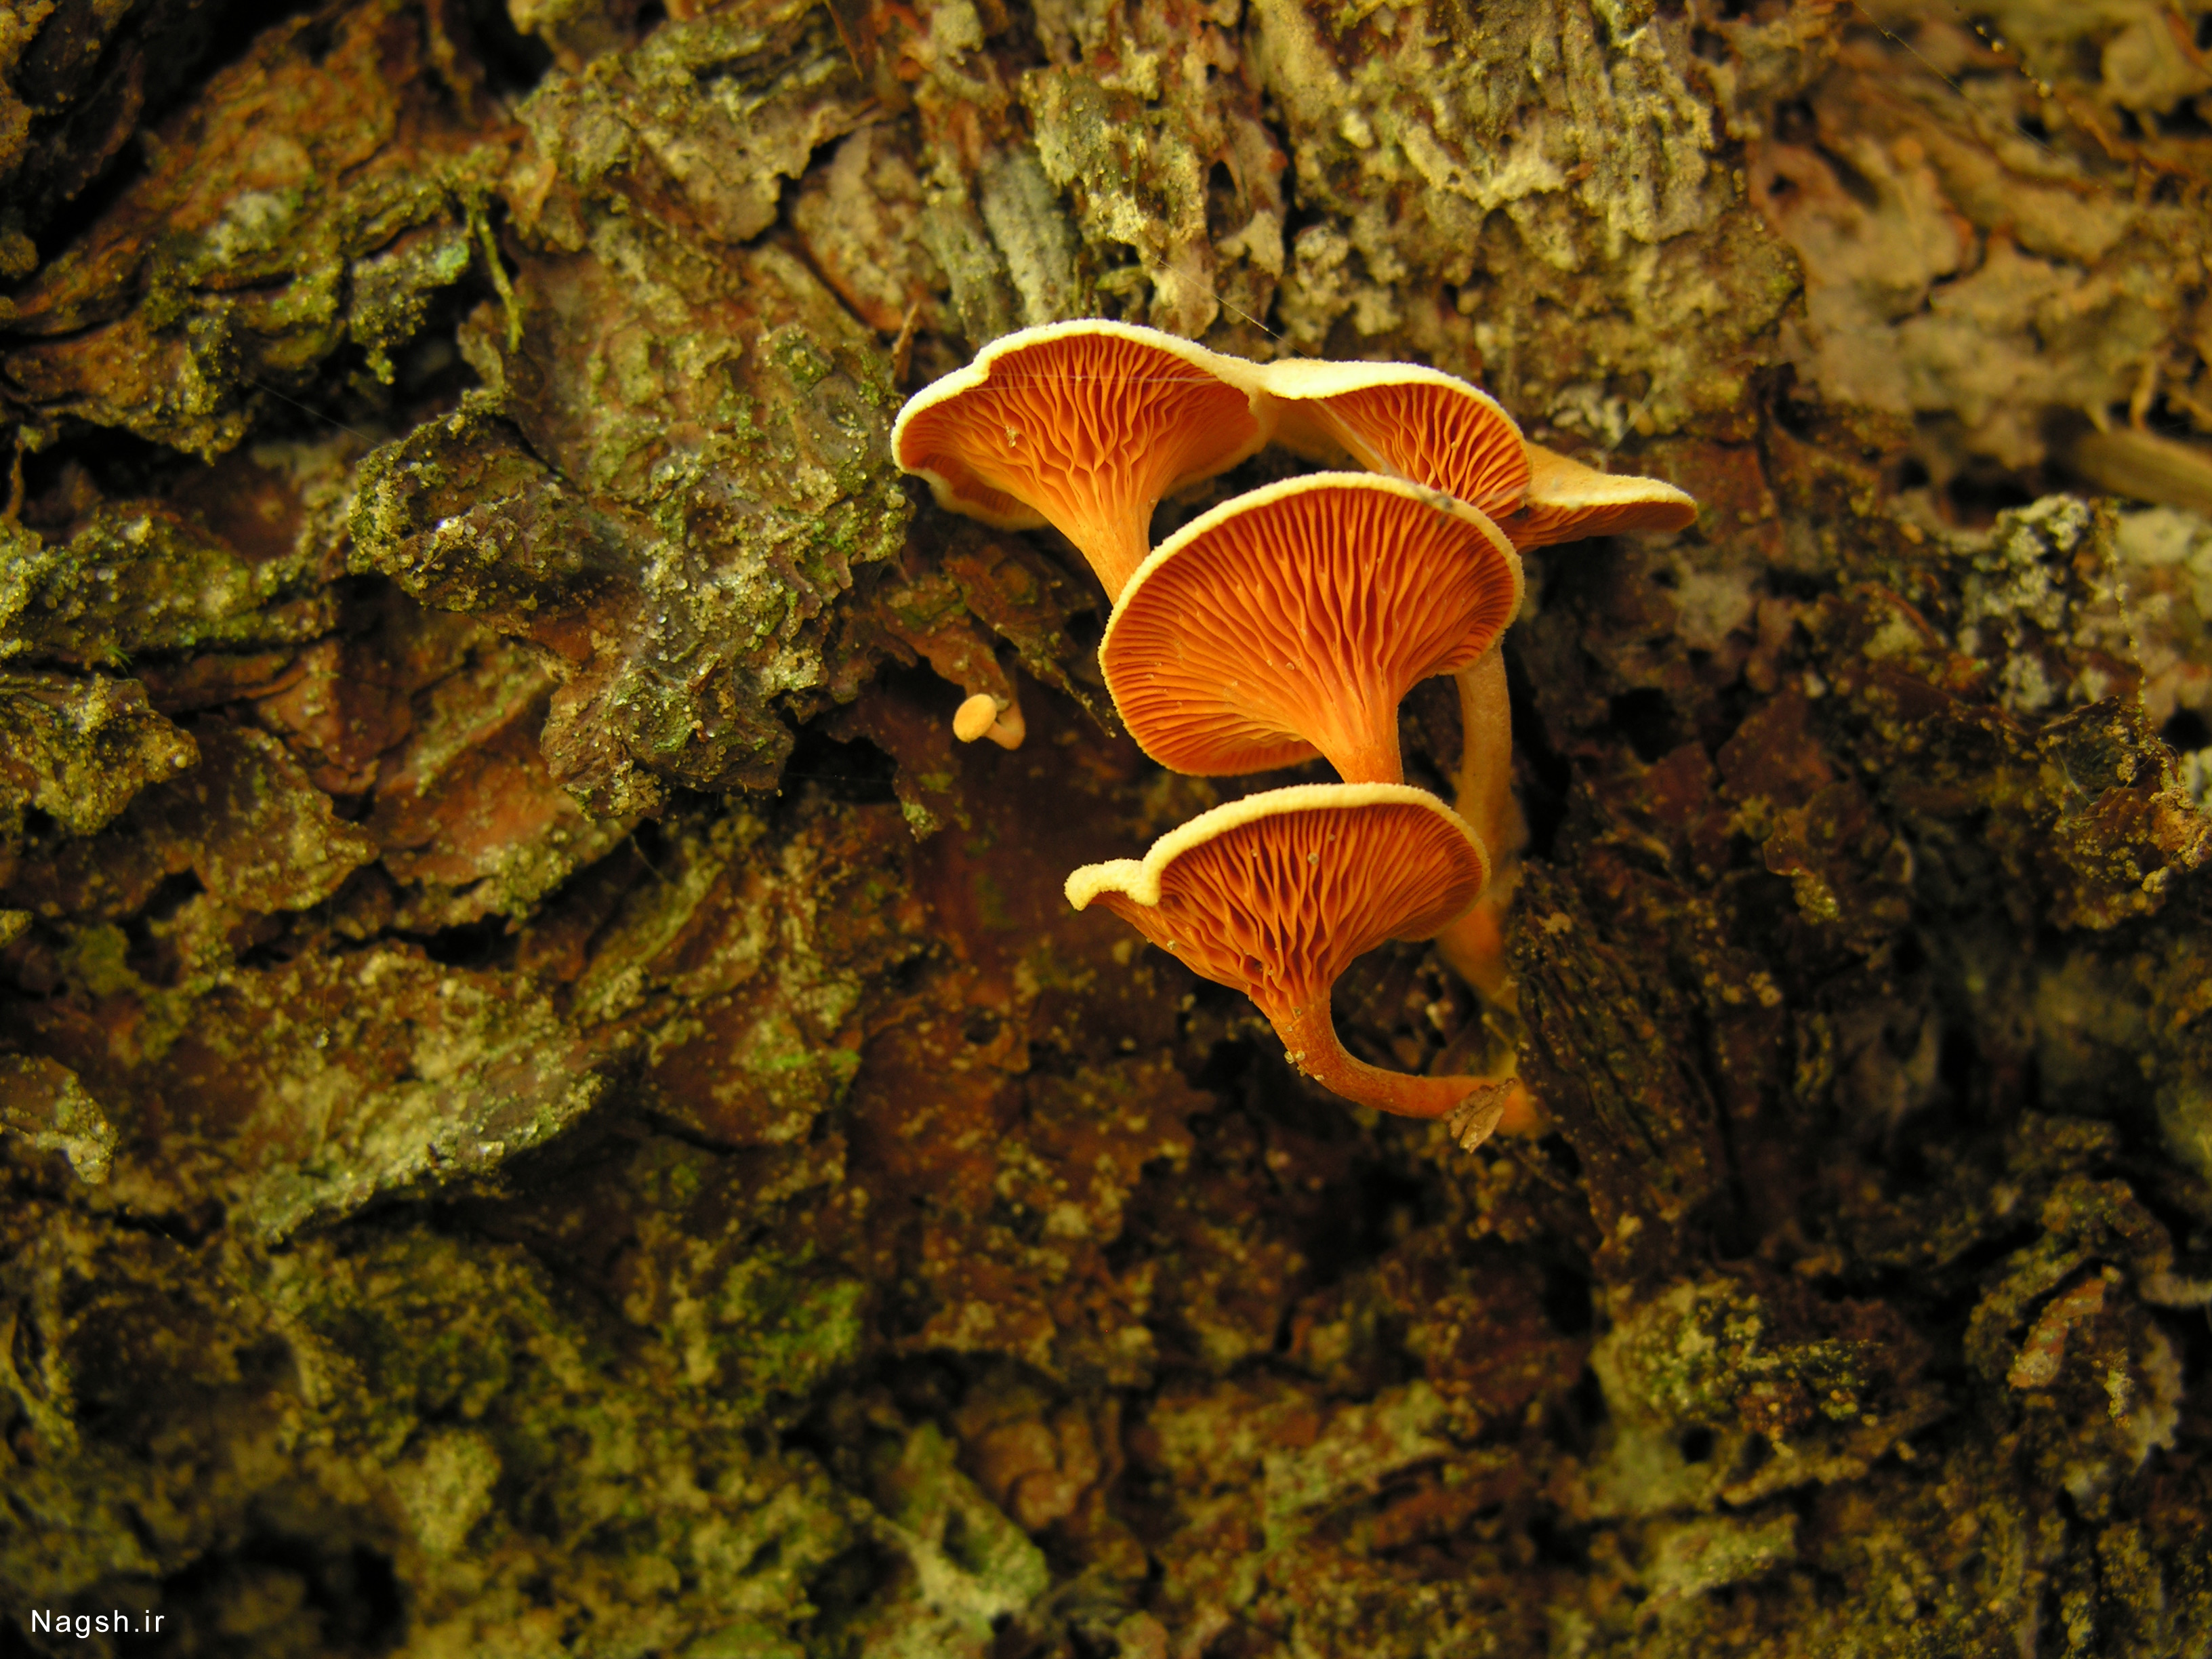 قارچ روئیده شده در تنه درخت